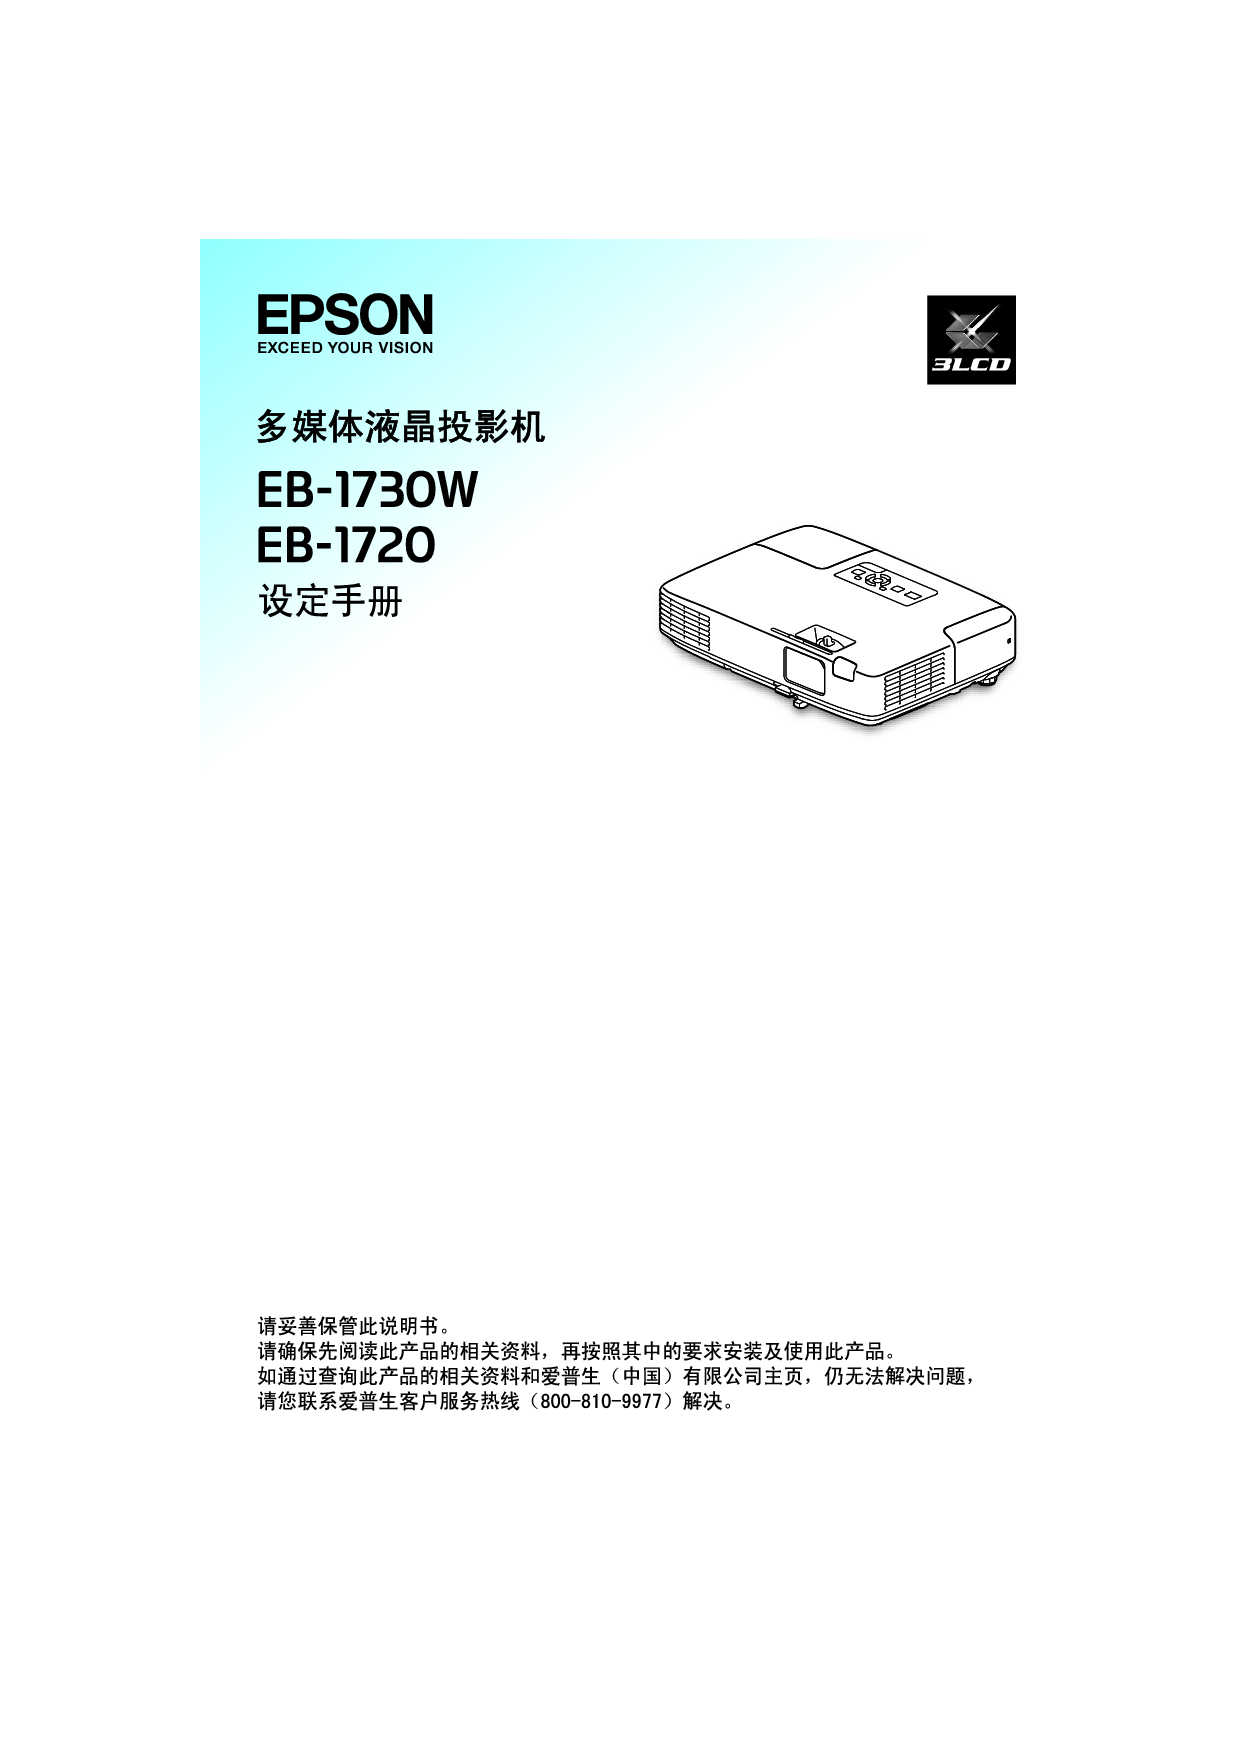 爱普生 Epson EB-1720 快速设置指南 封面